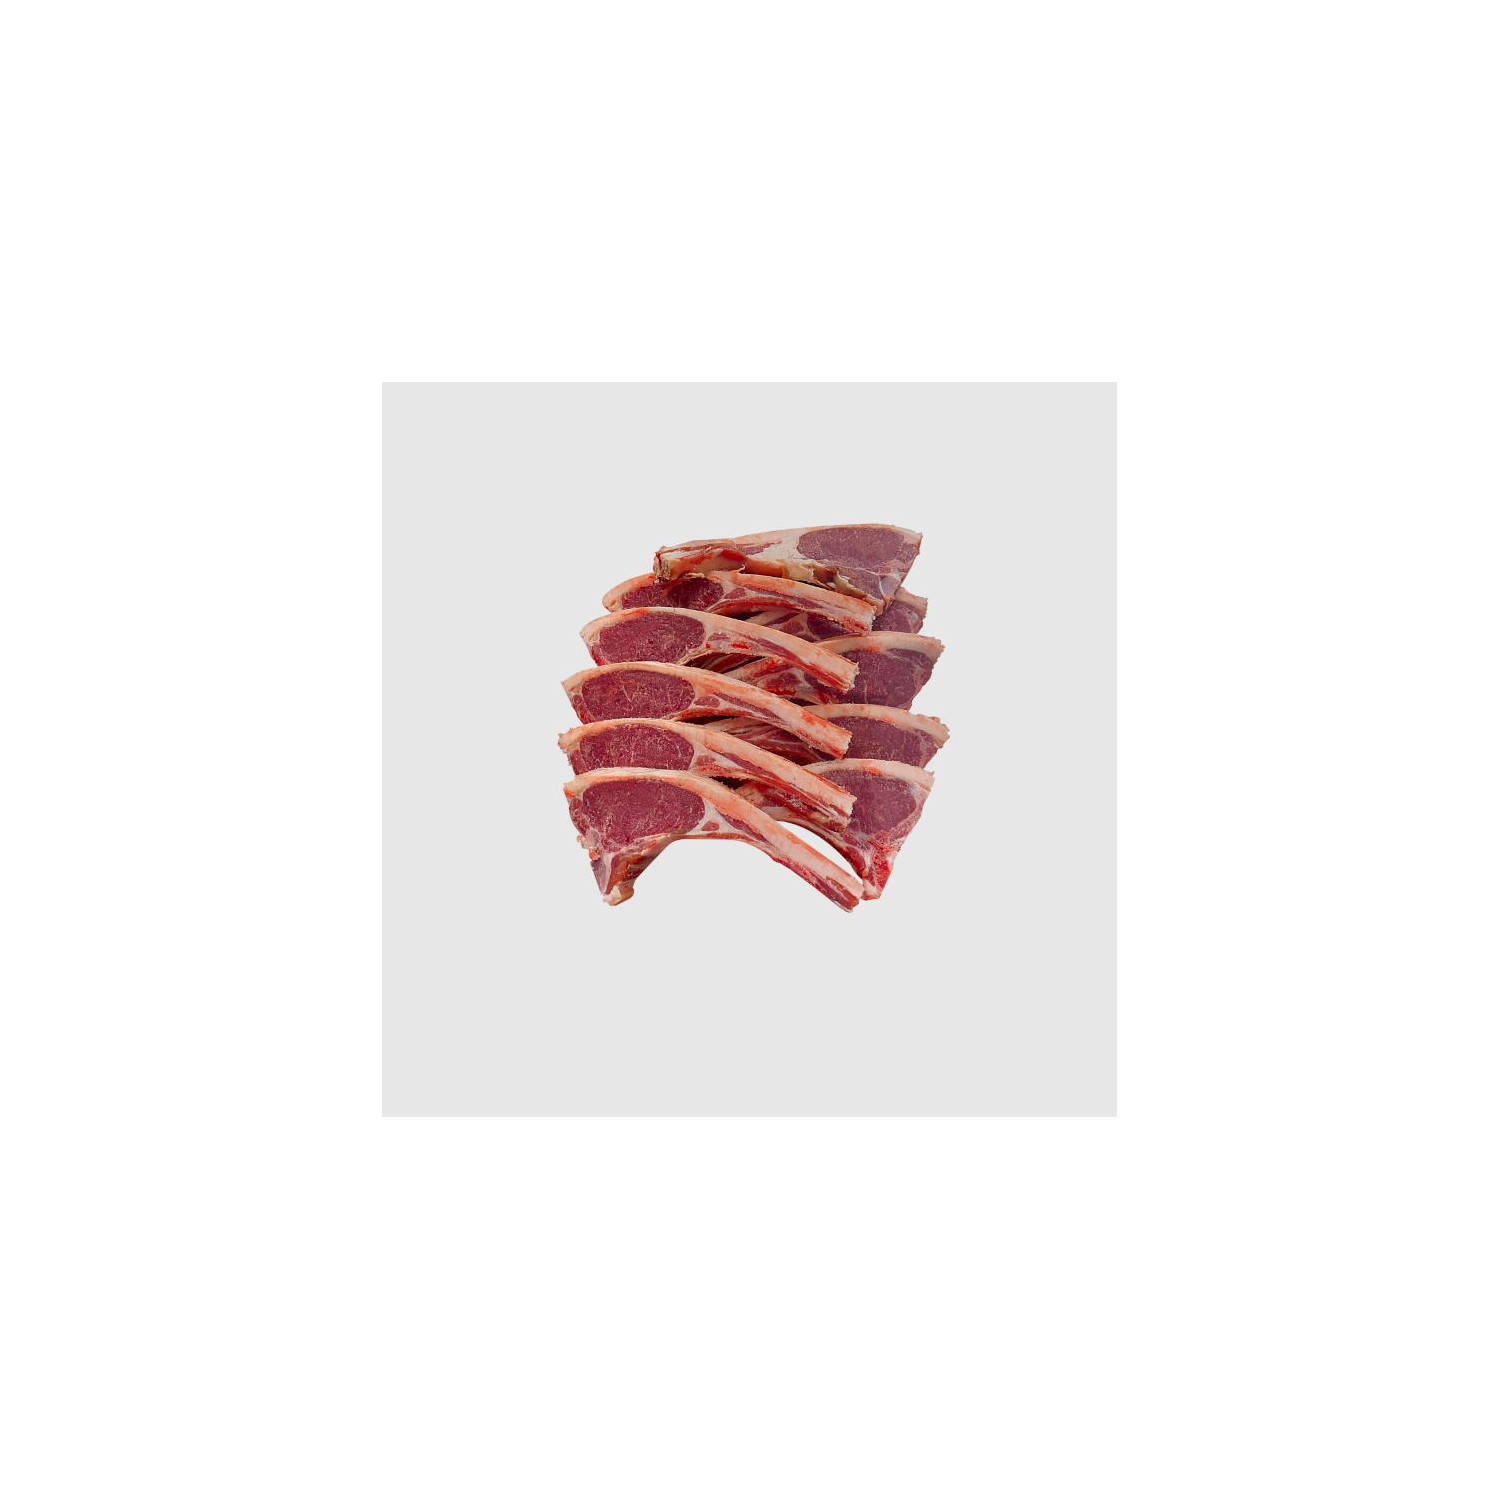 Comprar chuletas de cordero : carnicería en línea